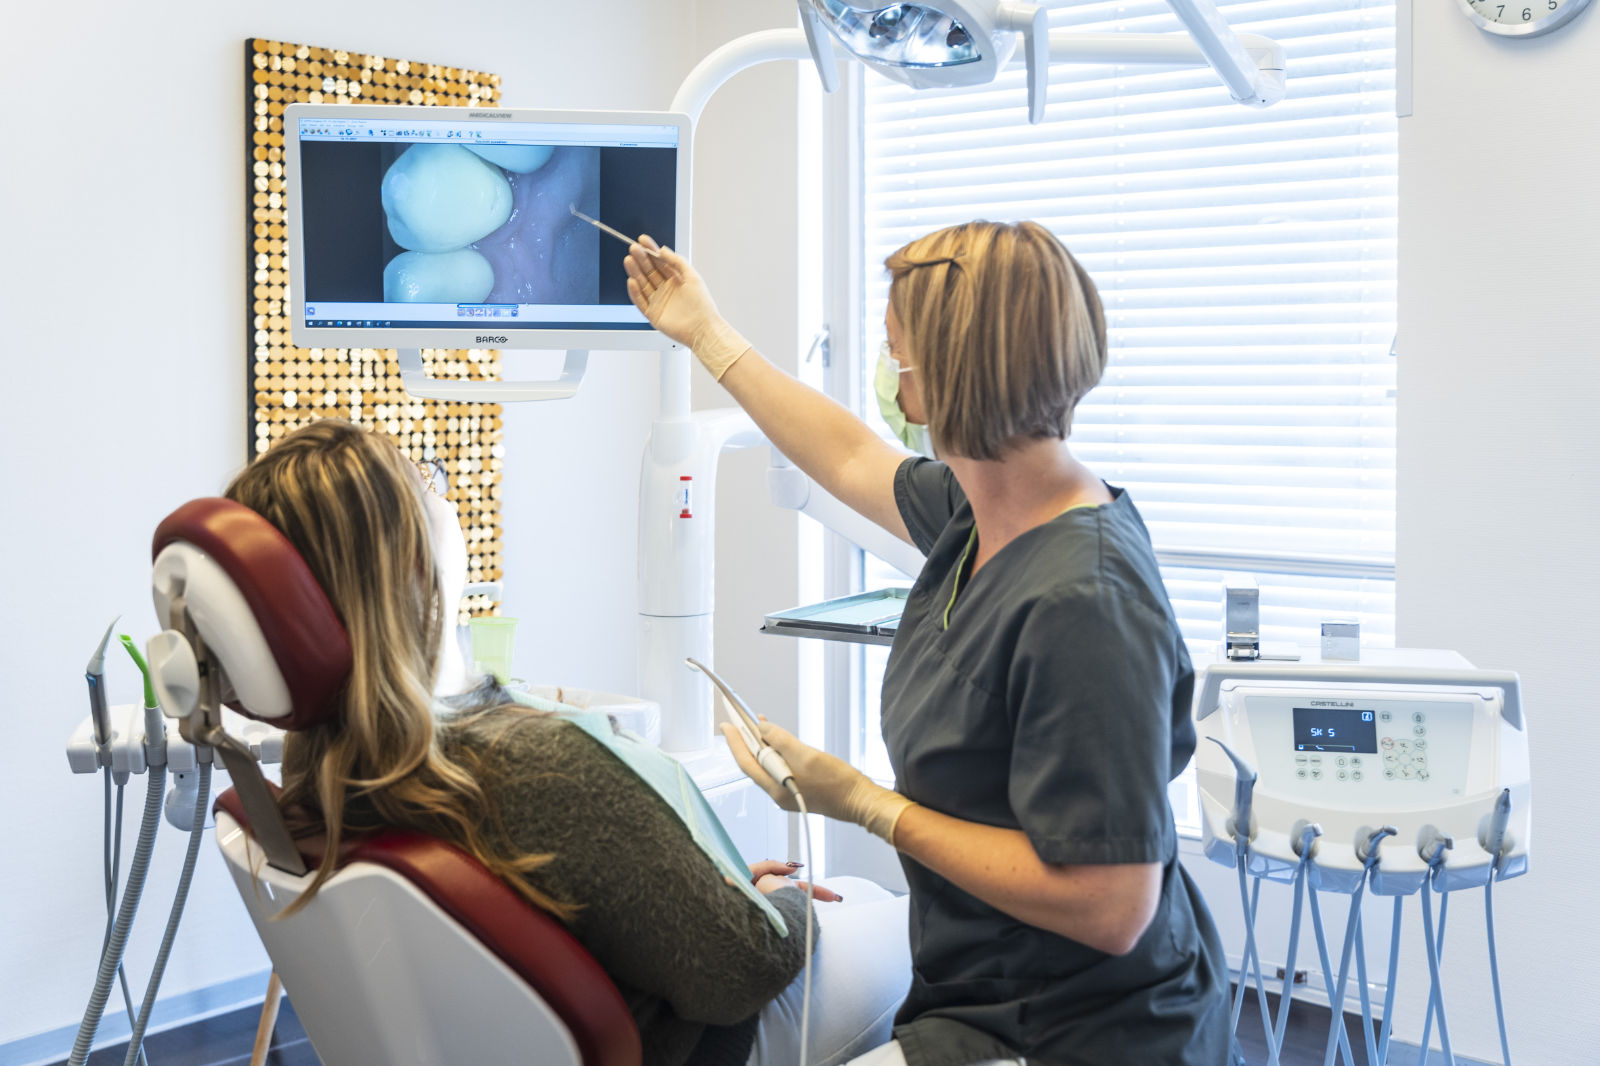 Dr. Stappler Zahnärztin Köln zeigt einer Patientin ein Röntgenbild